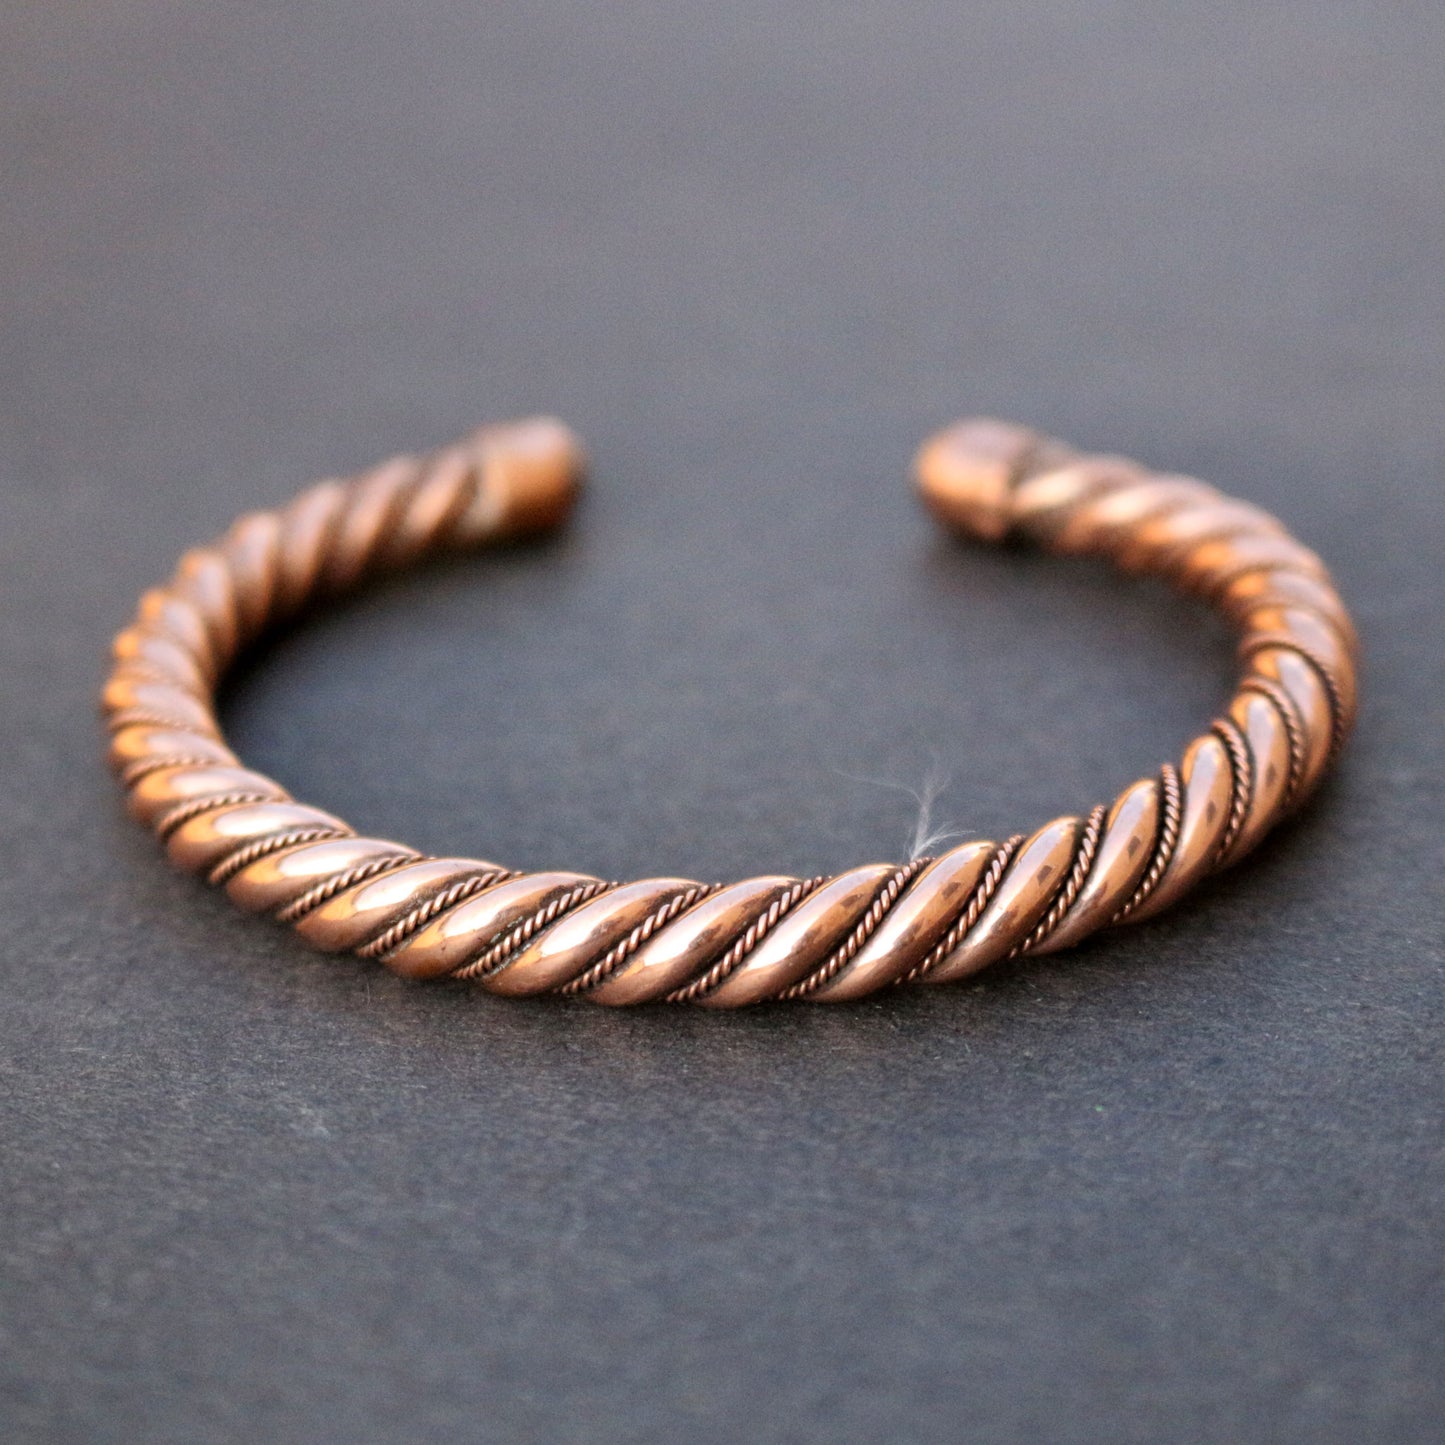 Twisted Copper Cuff Bracelet